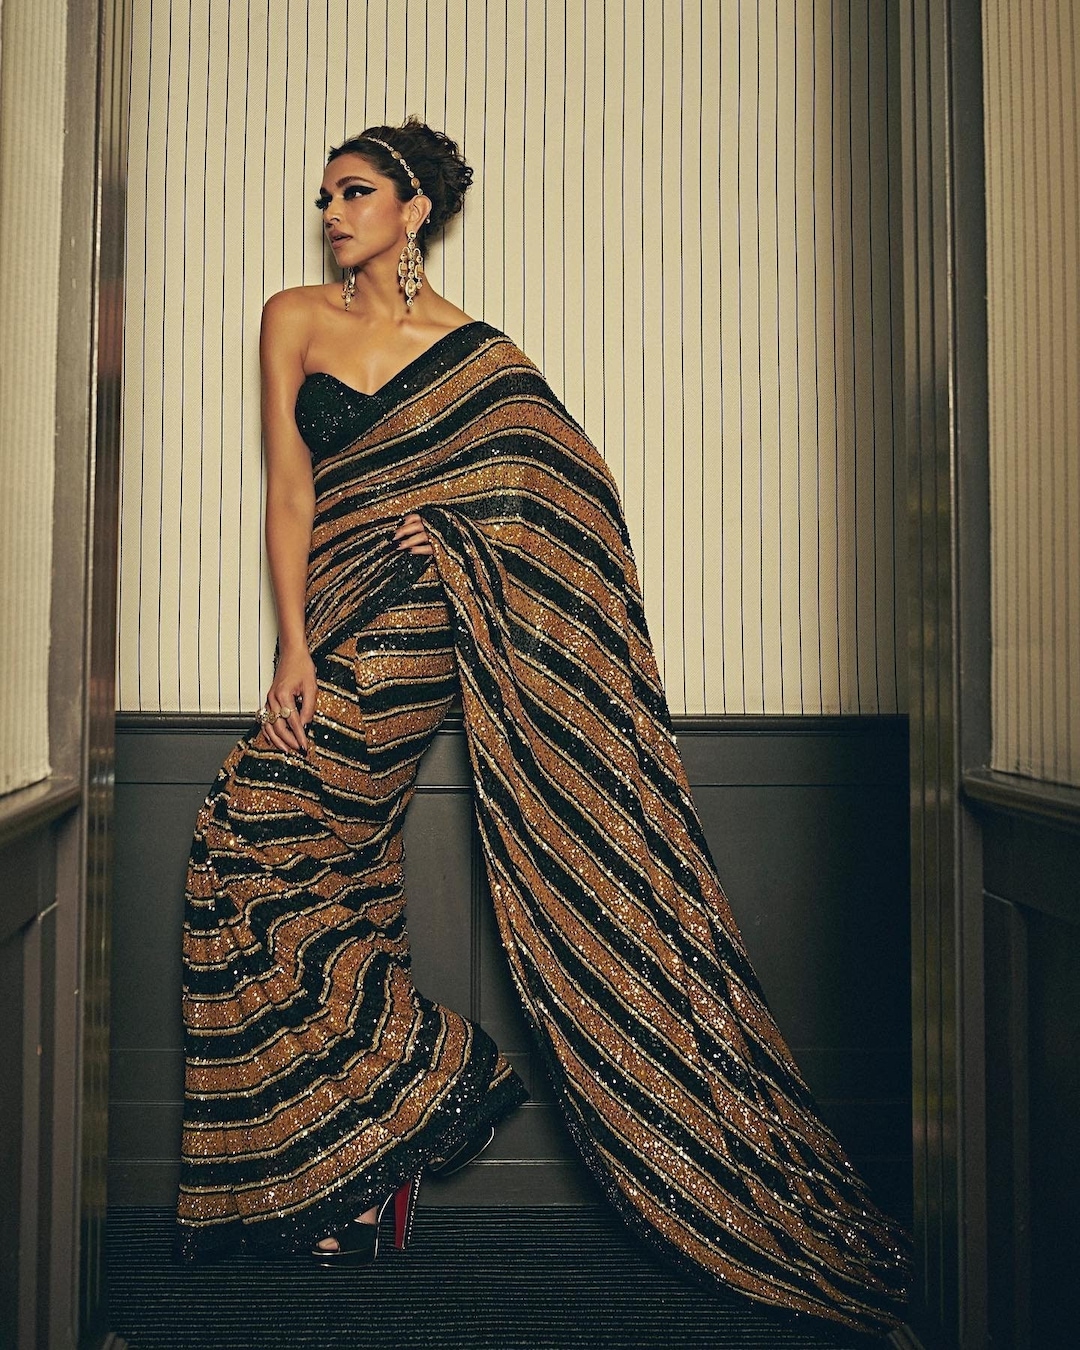 Deepika Padukone Cannes 2022 Saree/ Black Gold Sari/ Sequin picture pic